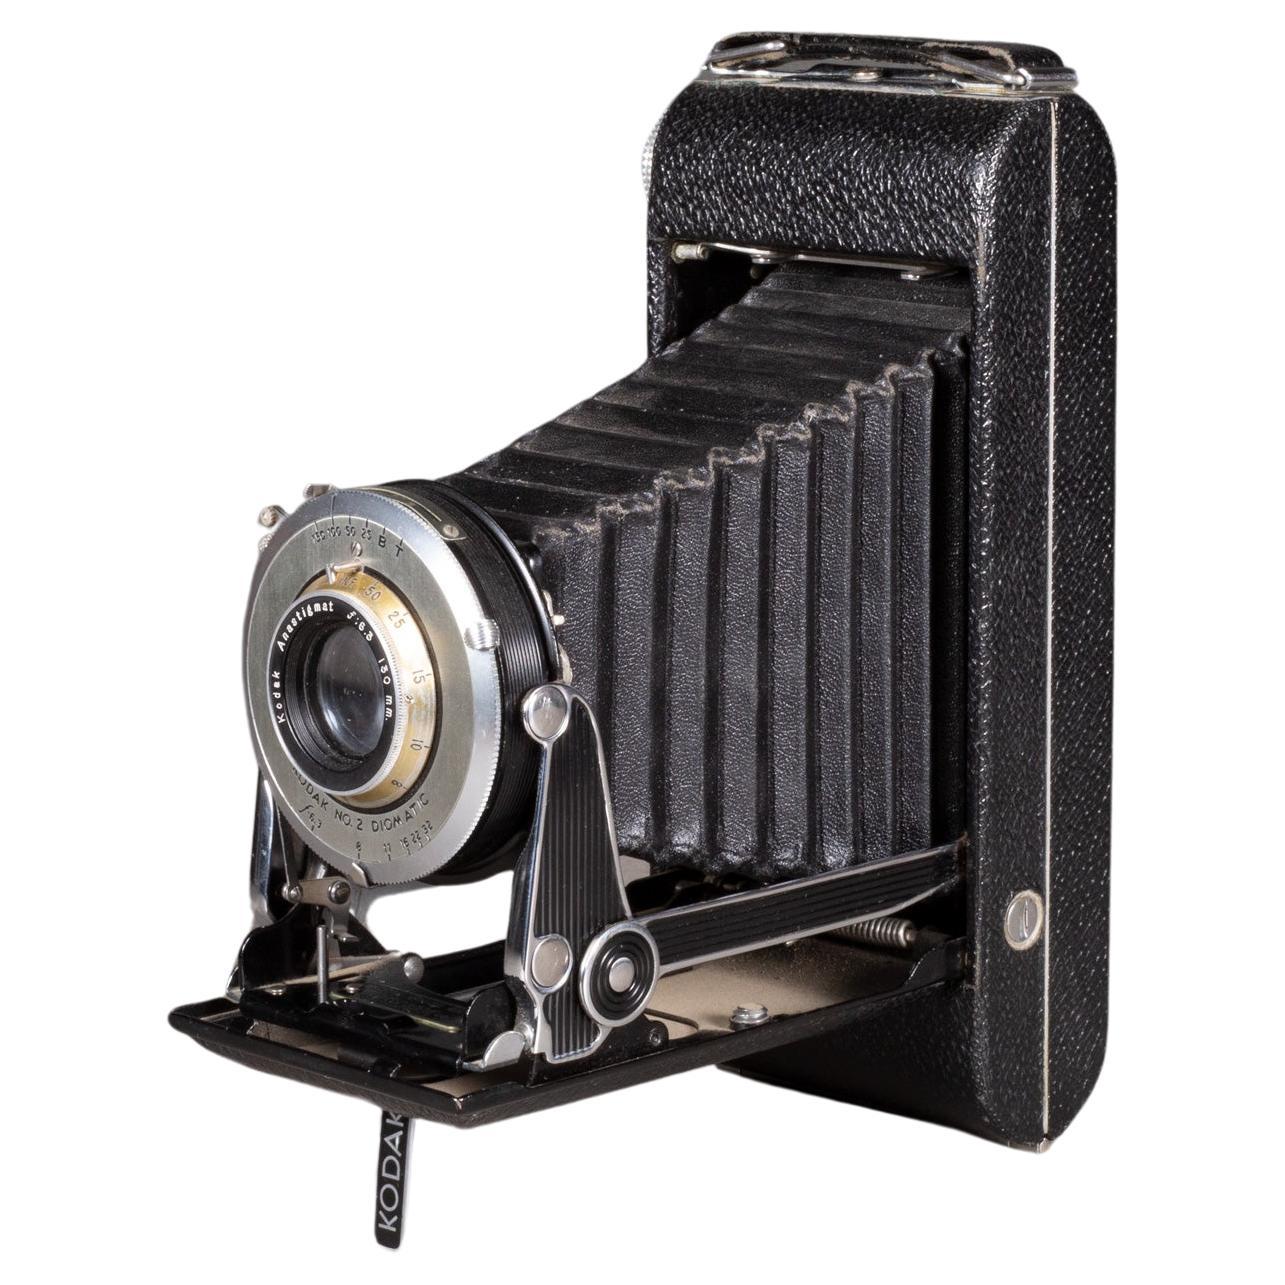 Art Deco Kodak Senior Six-16 Folding Camera c.1937-1939 (FREE SHIPPING)